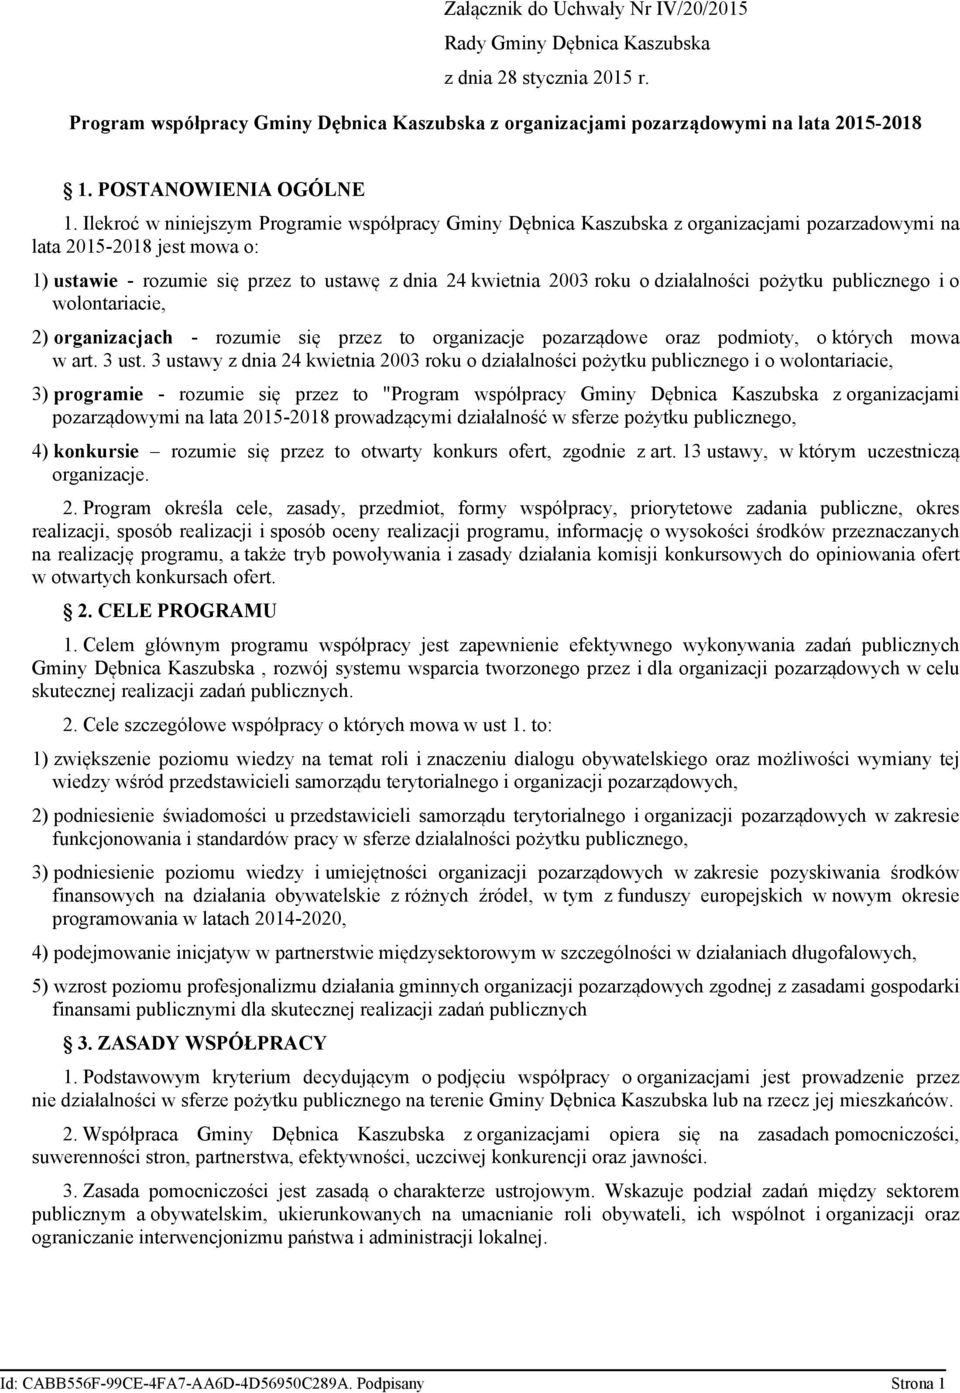 Ilekroć w niniejszym Programie współpracy Gminy Dębnica Kaszubska z organizacjami pozarzadowymi na lata 2015-2018 jest mowa o: 1) ustawie - rozumie się przez to ustawę z dnia 24 kwietnia 2003 roku o